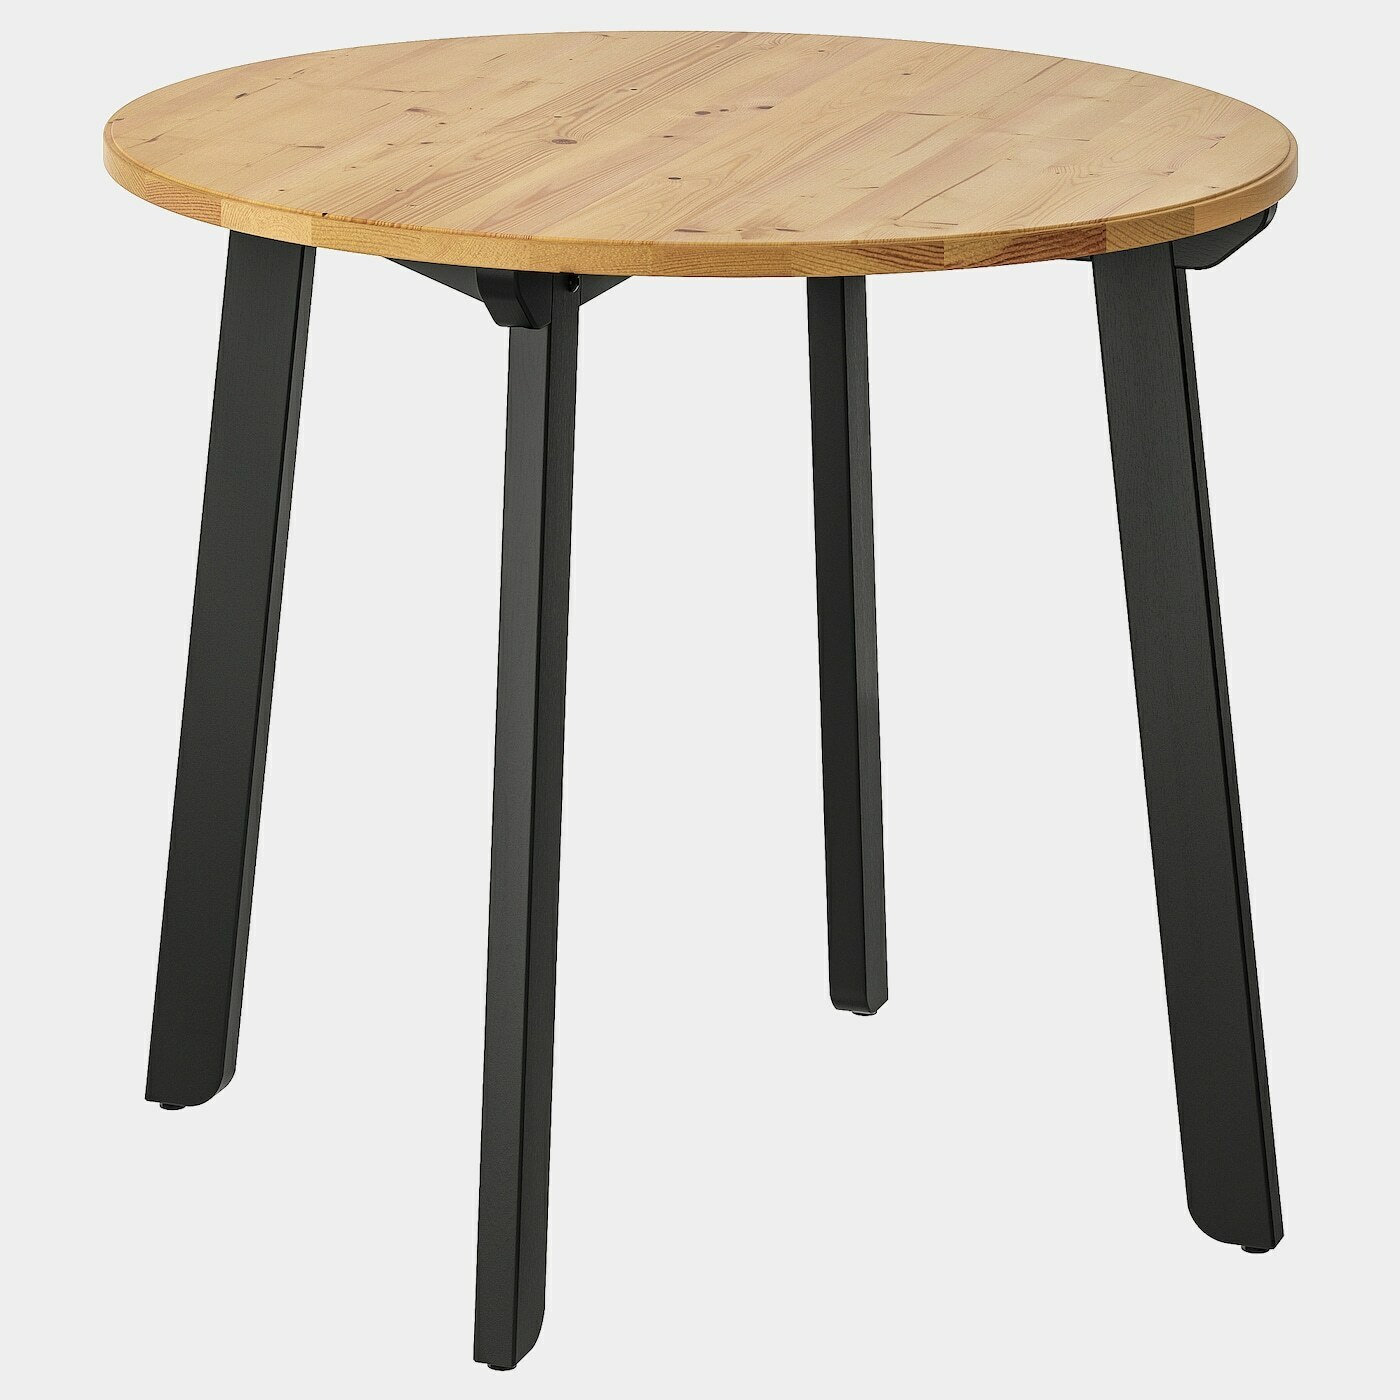 GAMLARED Tisch  - Esstische - Möbel Ideen für dein Zuhause von Home Trends. Möbel Trends von Social Media Influencer für dein Skandi Zuhause.